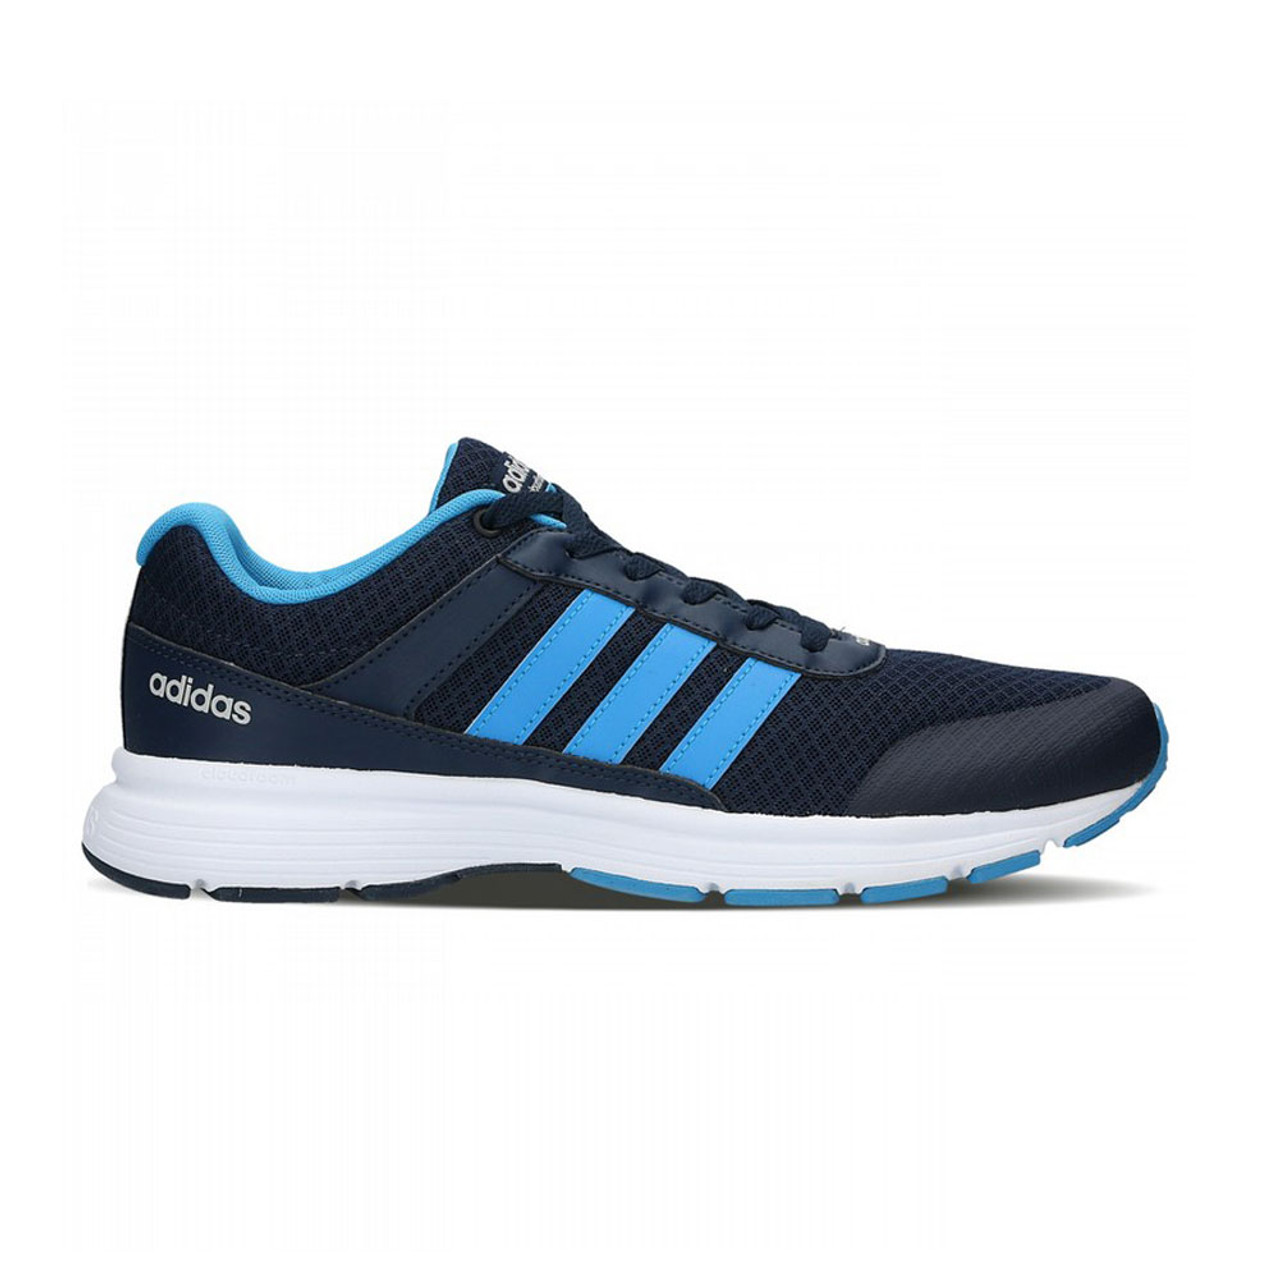 Adidas Men's Cloudfoam Vs City Sneaker - Blue | Discount Adidas Athletic Shoes & More - Shoolu.com | Shoolu.com